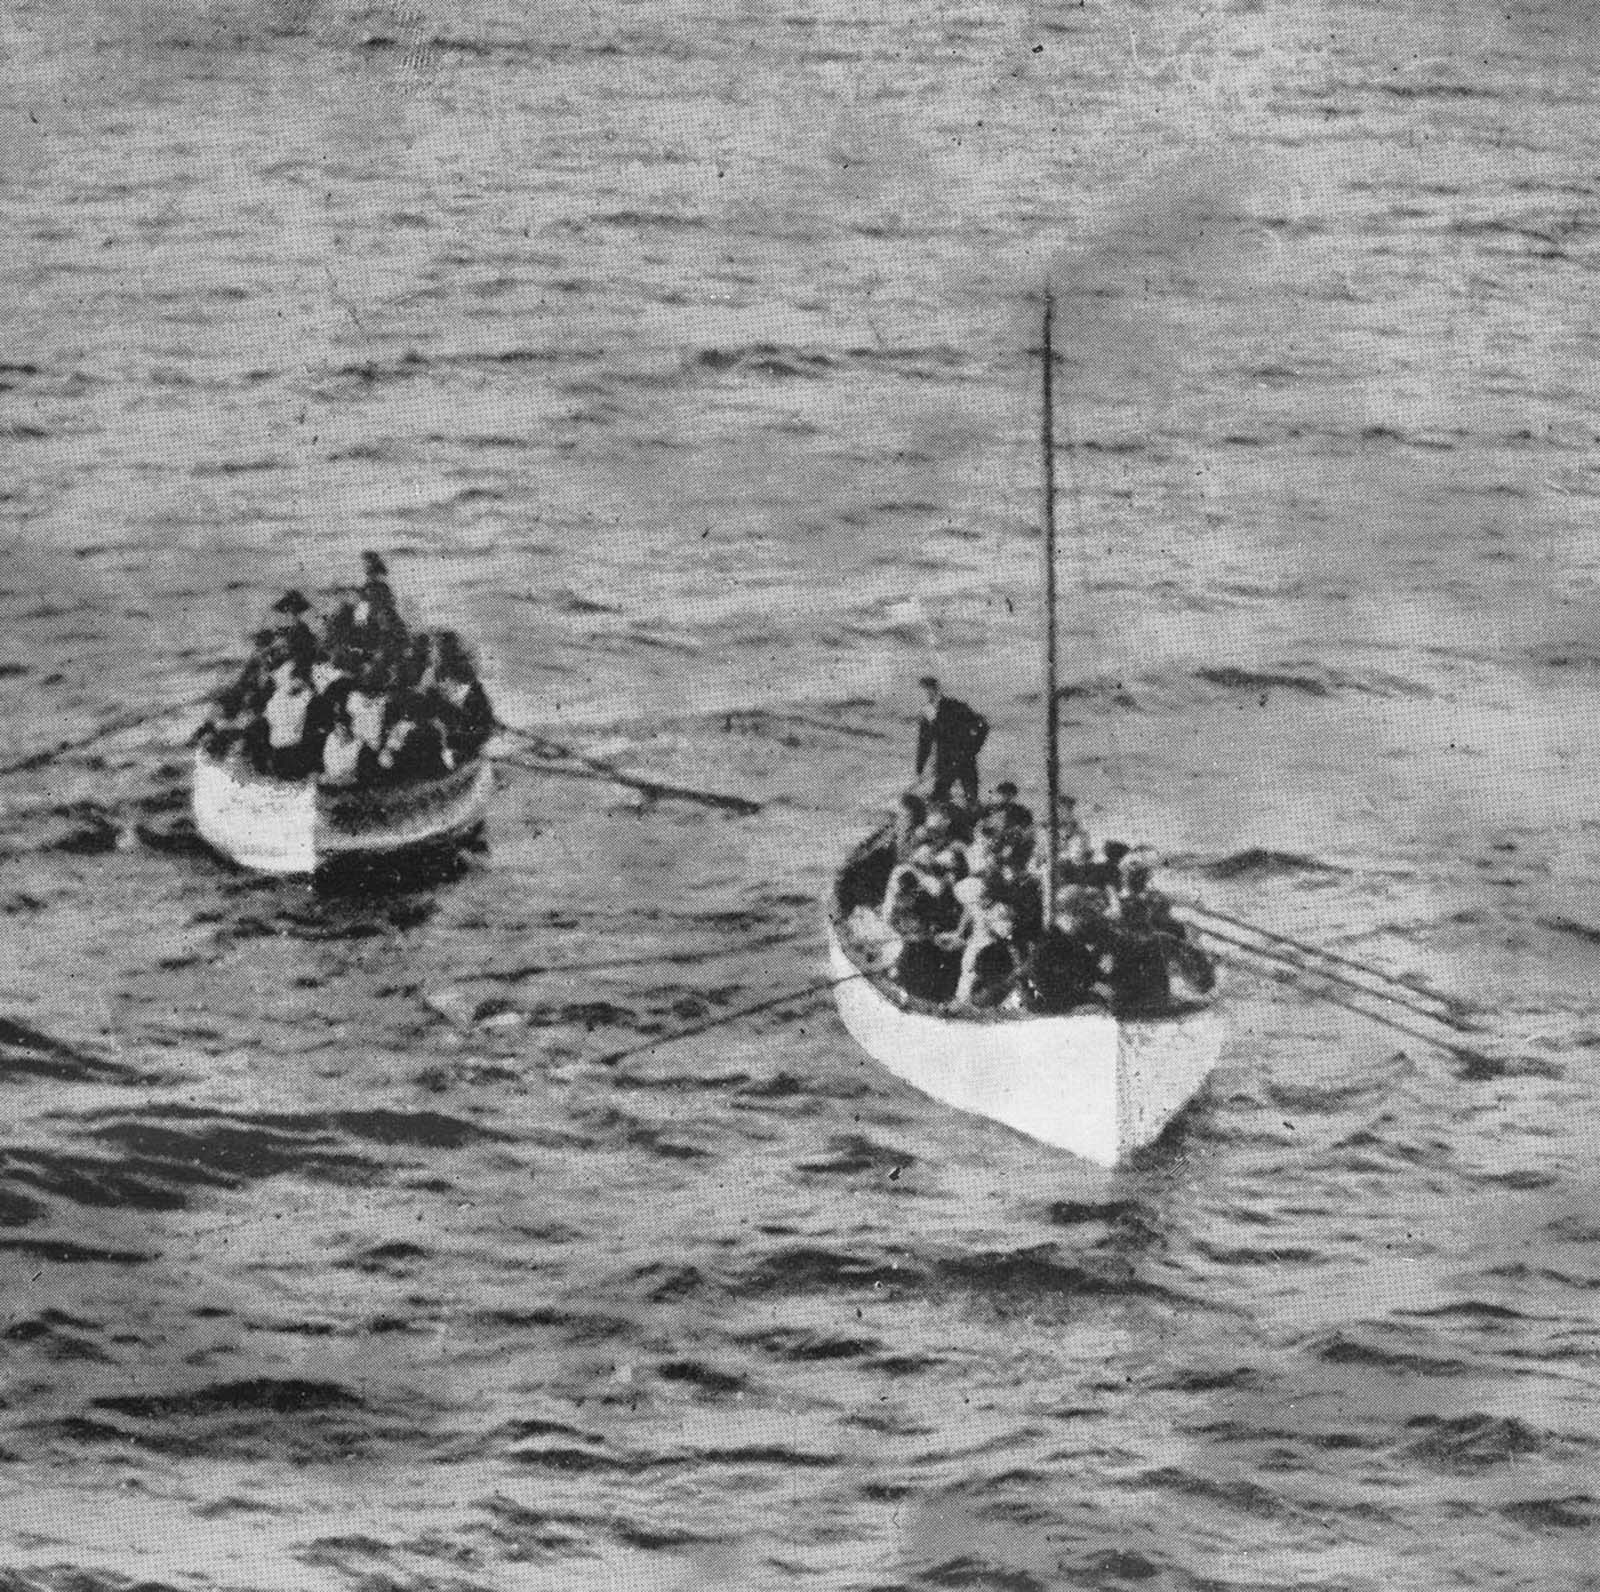 Titanic survivors approach the Carpathia.